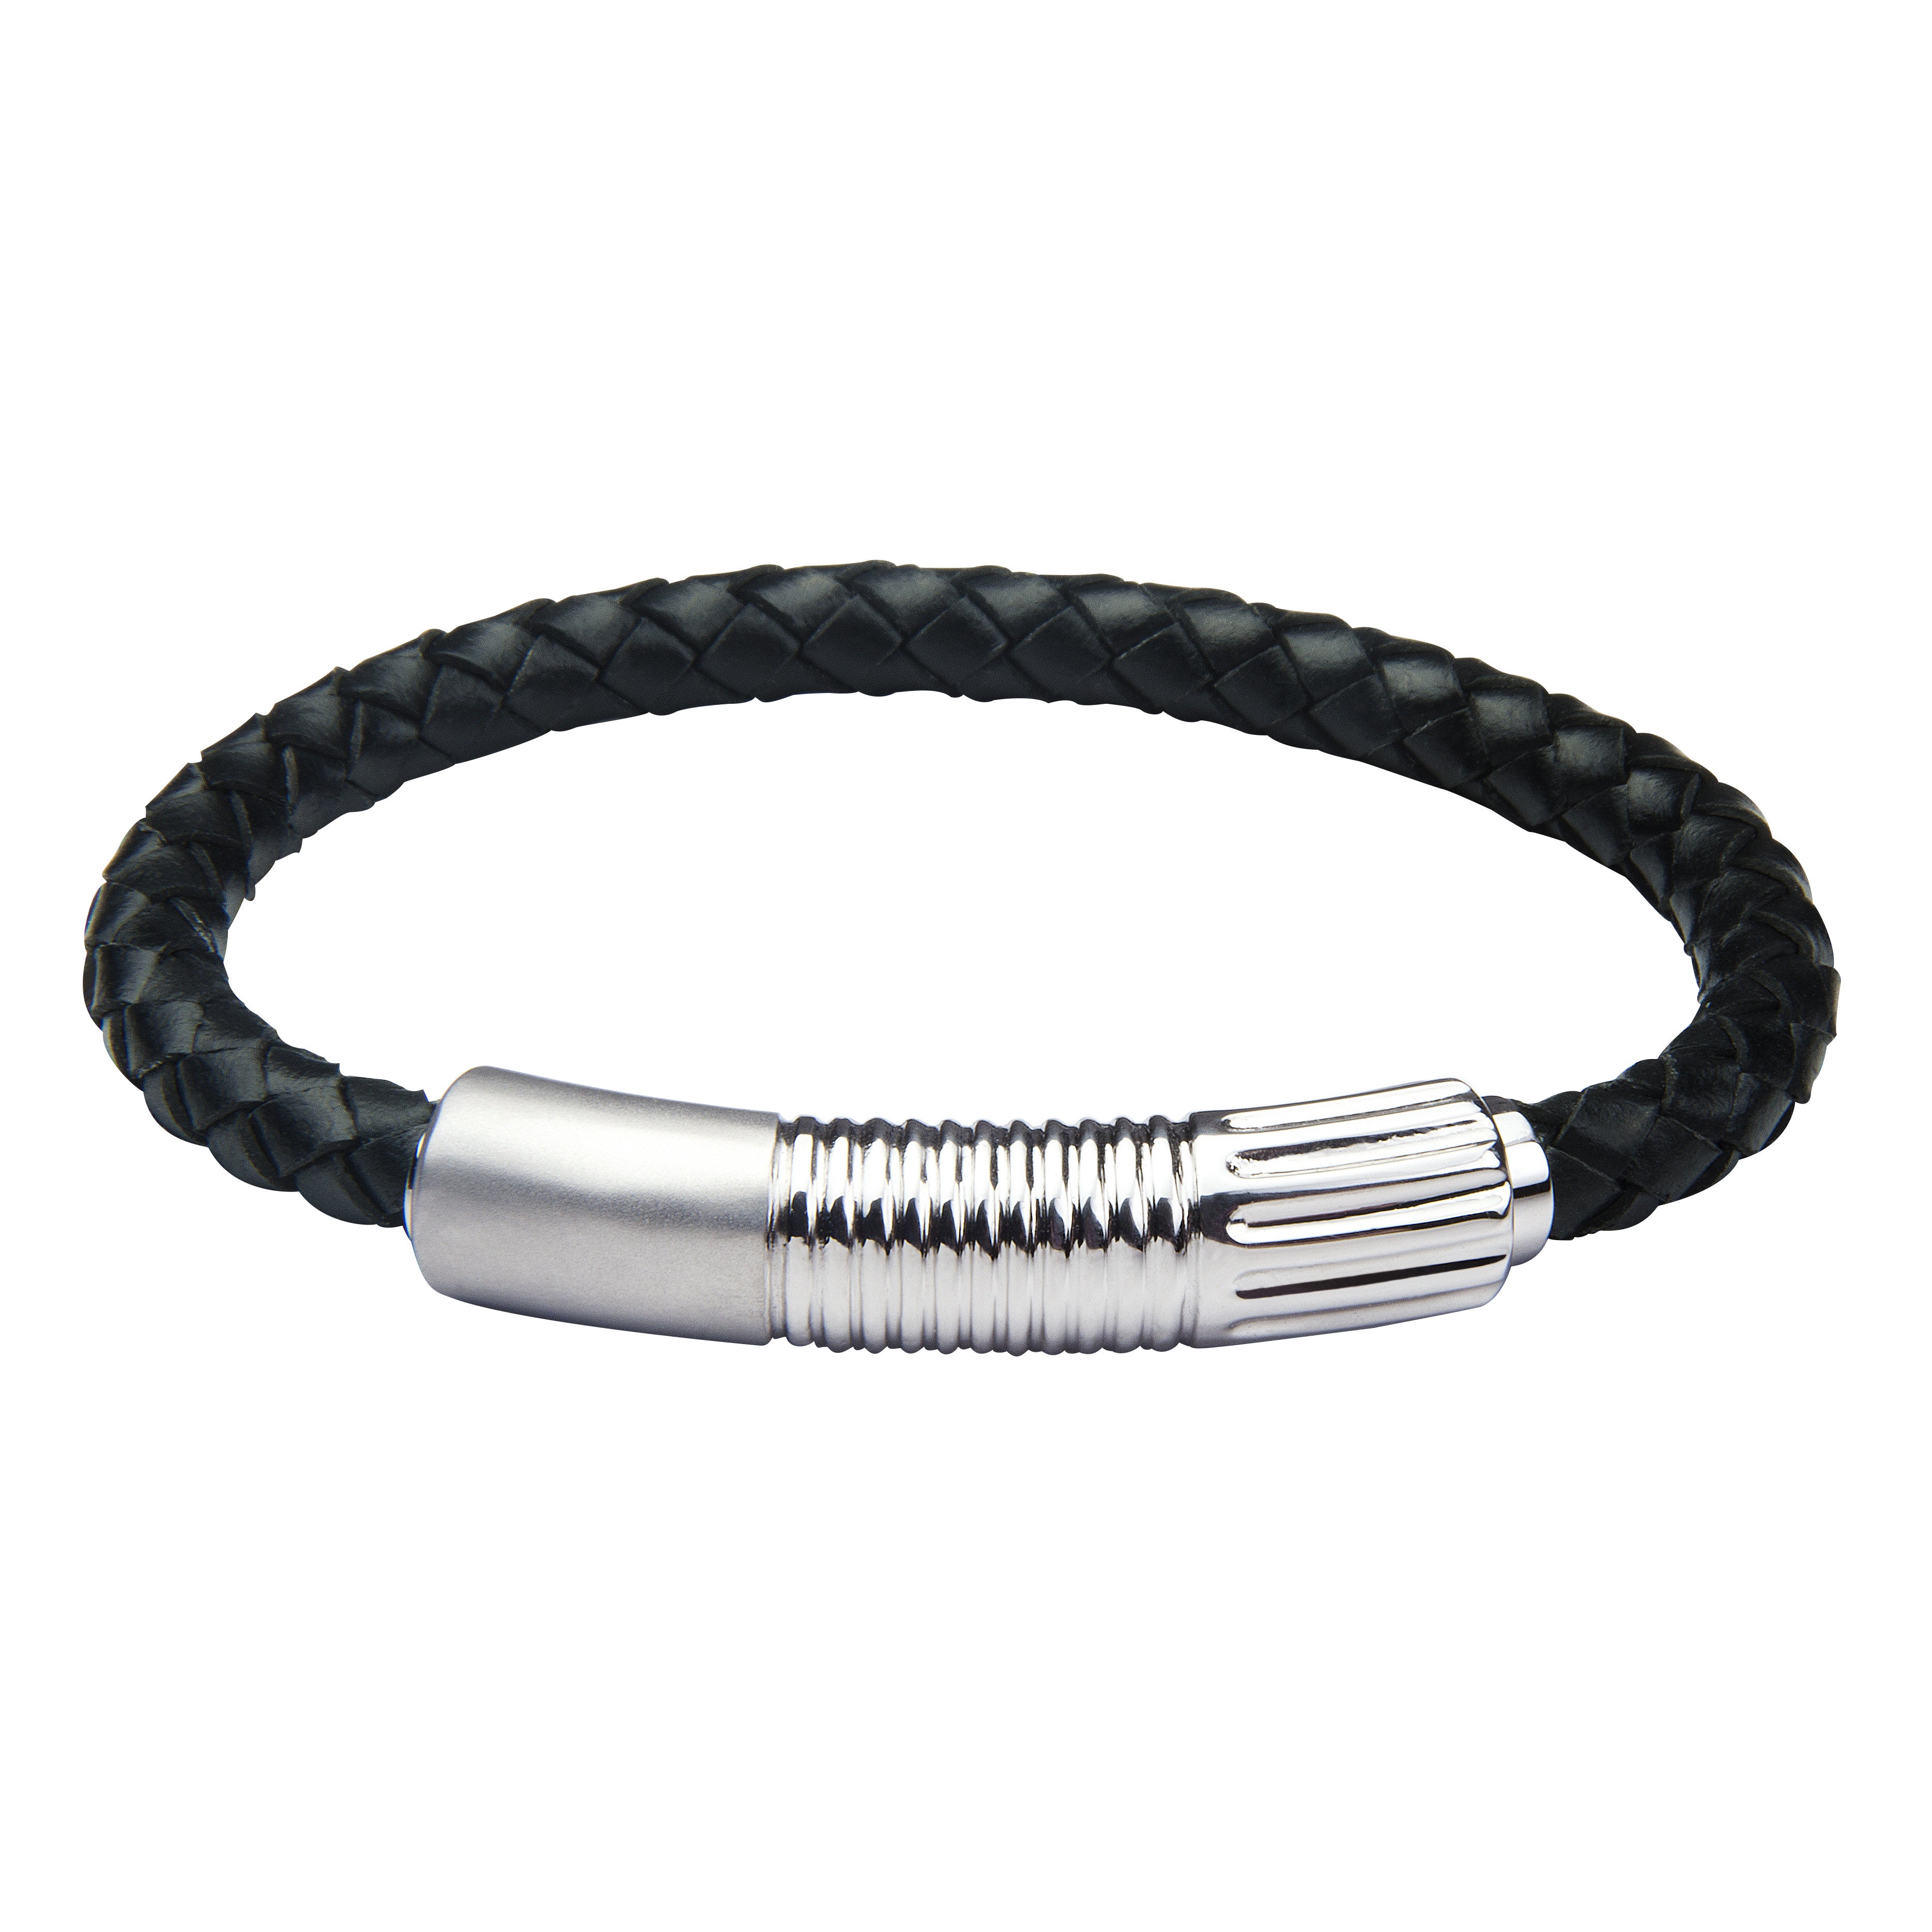 INB25 leather and steel adjustable bracelet